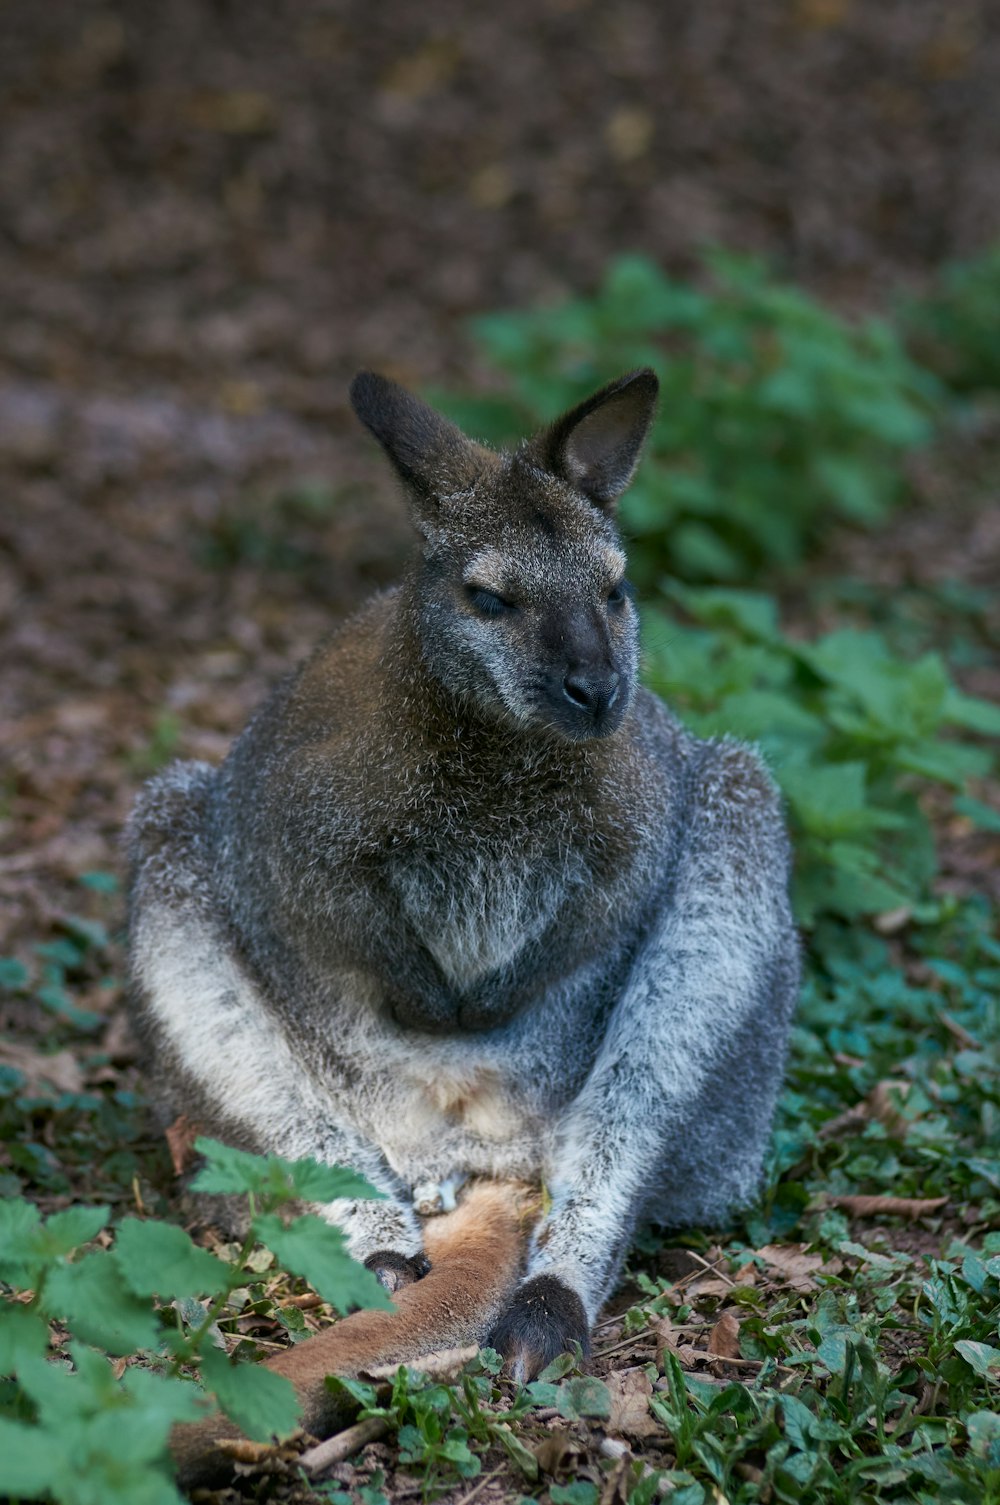 brown kangaroo on green grass during daytime